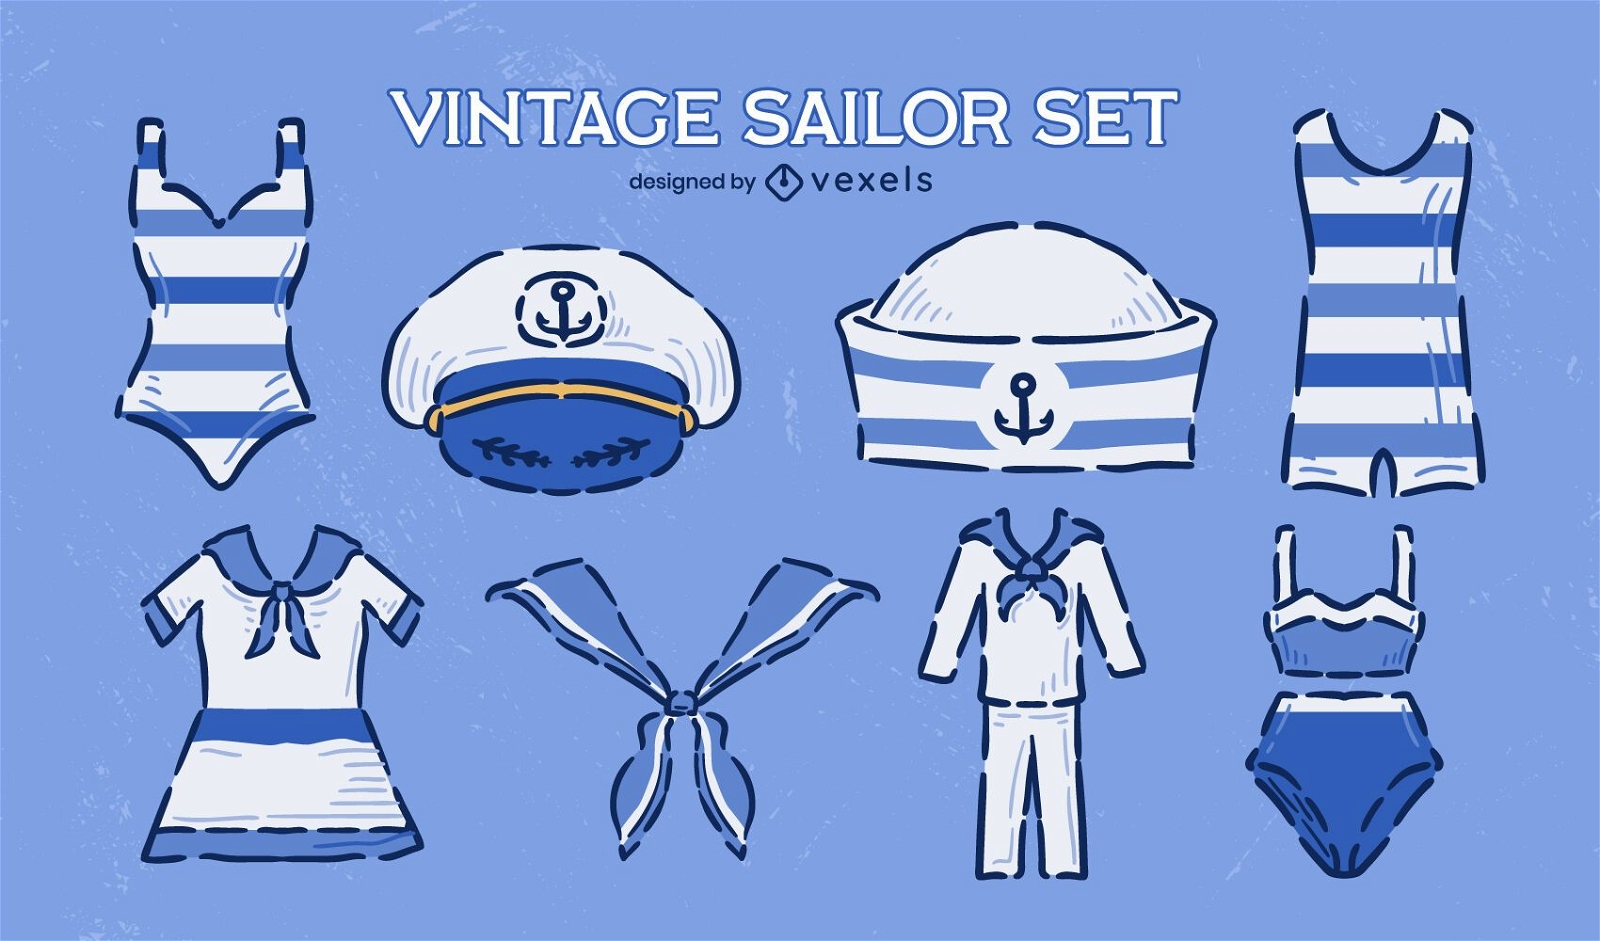 Conjunto de rabiscos vintage de roupas de uniforme de marinheiro